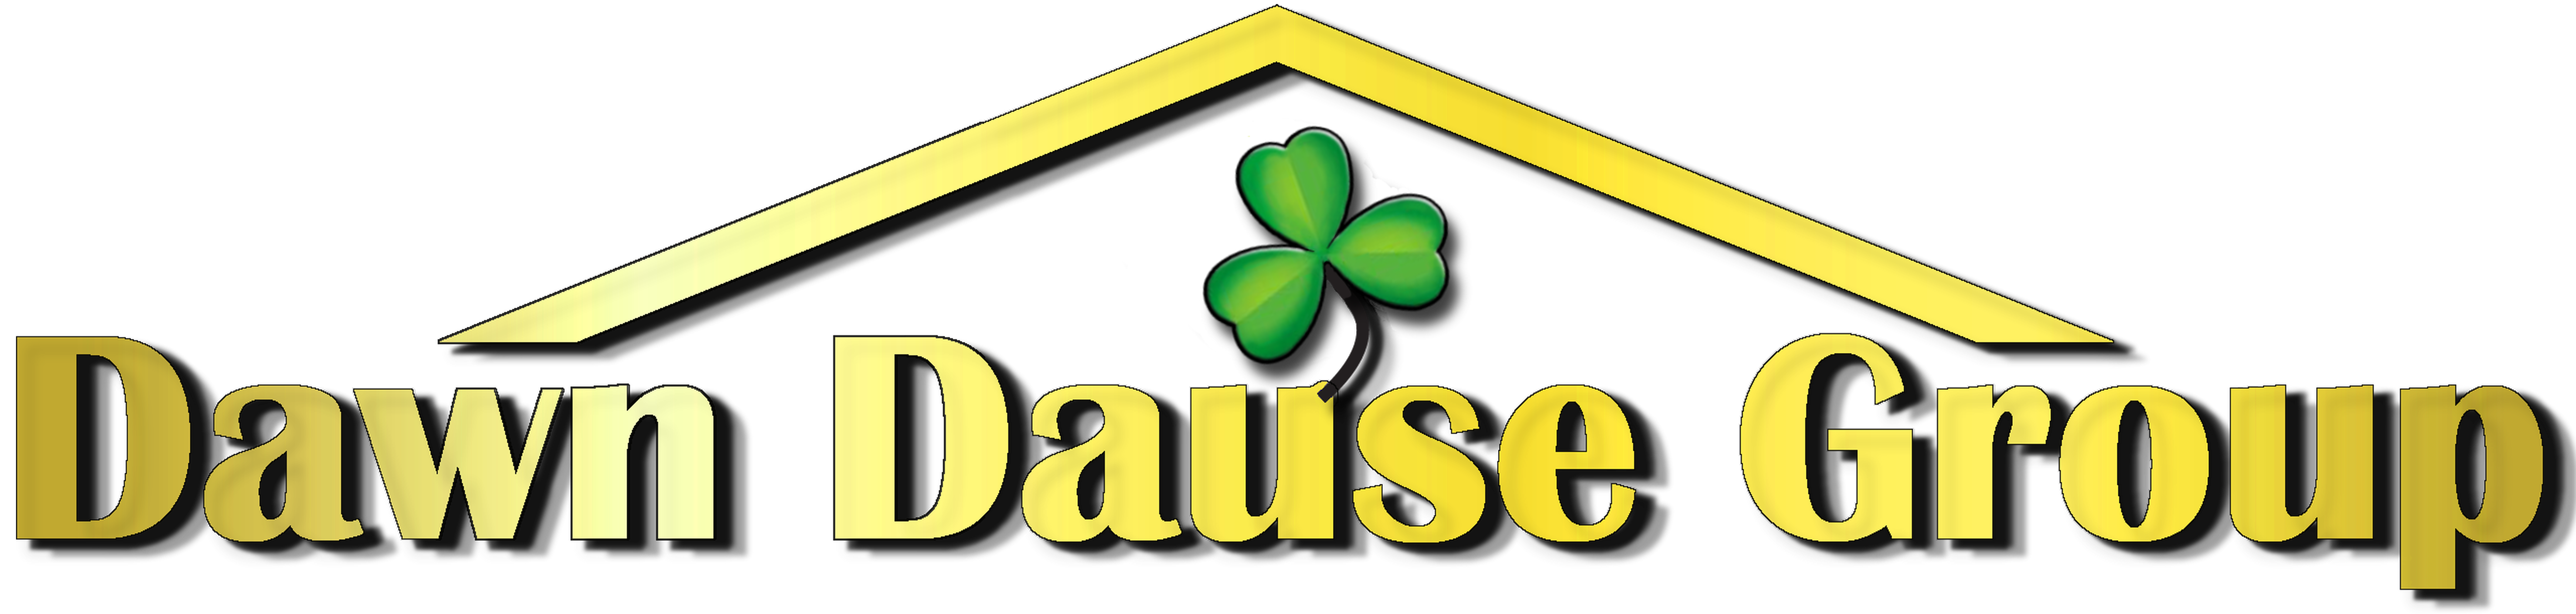 Dawn Dause Group Logo